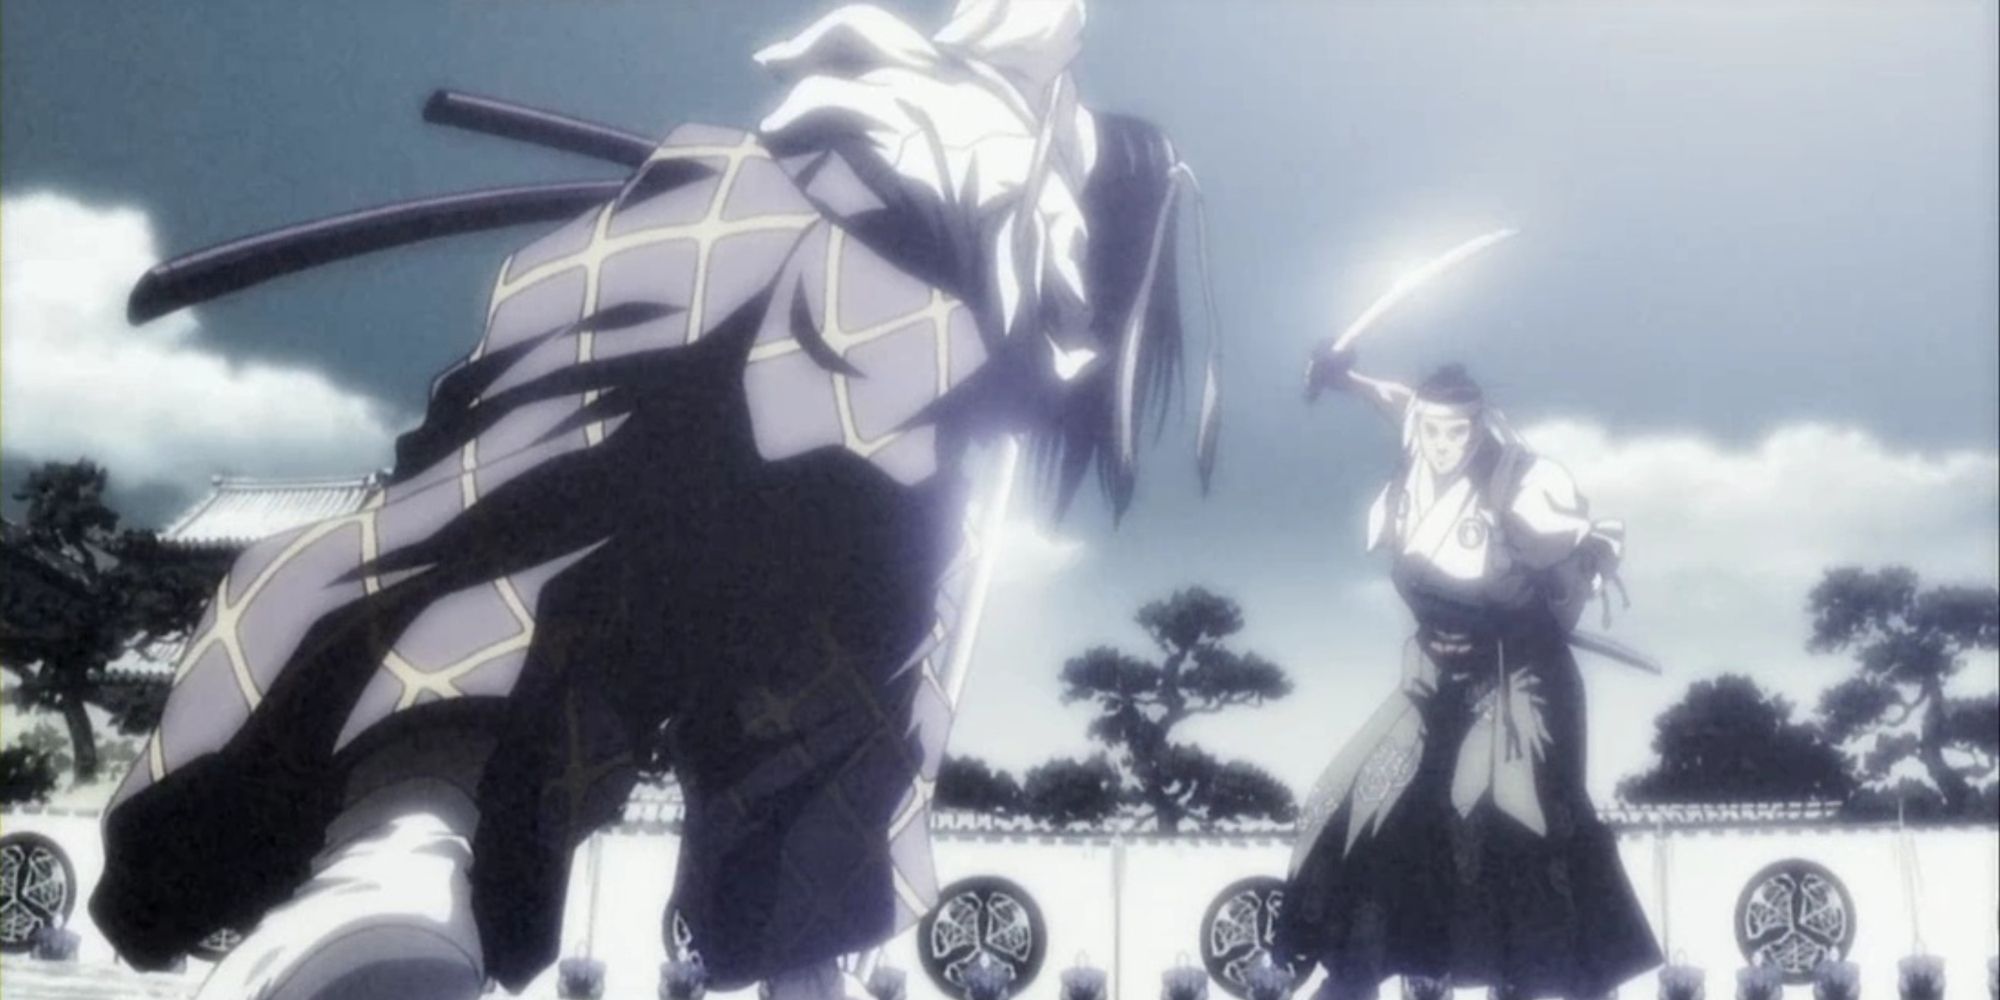 Shigurui Death Frenzy combat scene screenshot